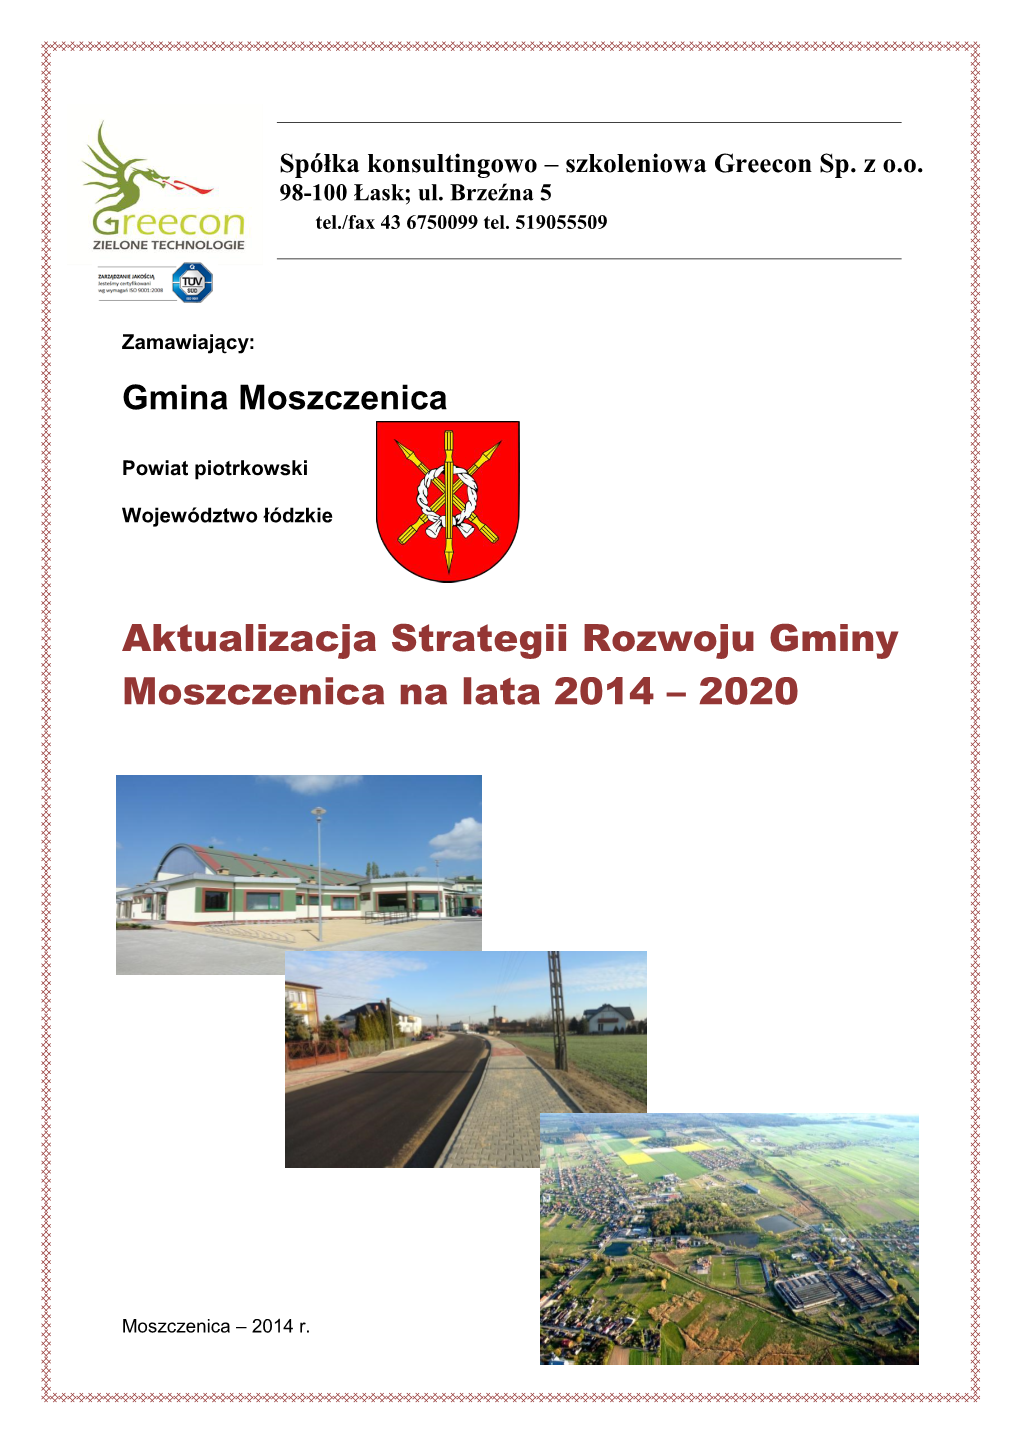 Aktualizacja Strategii Rozwoju Gminy Moszczenica Na Lata 2014 – 2020